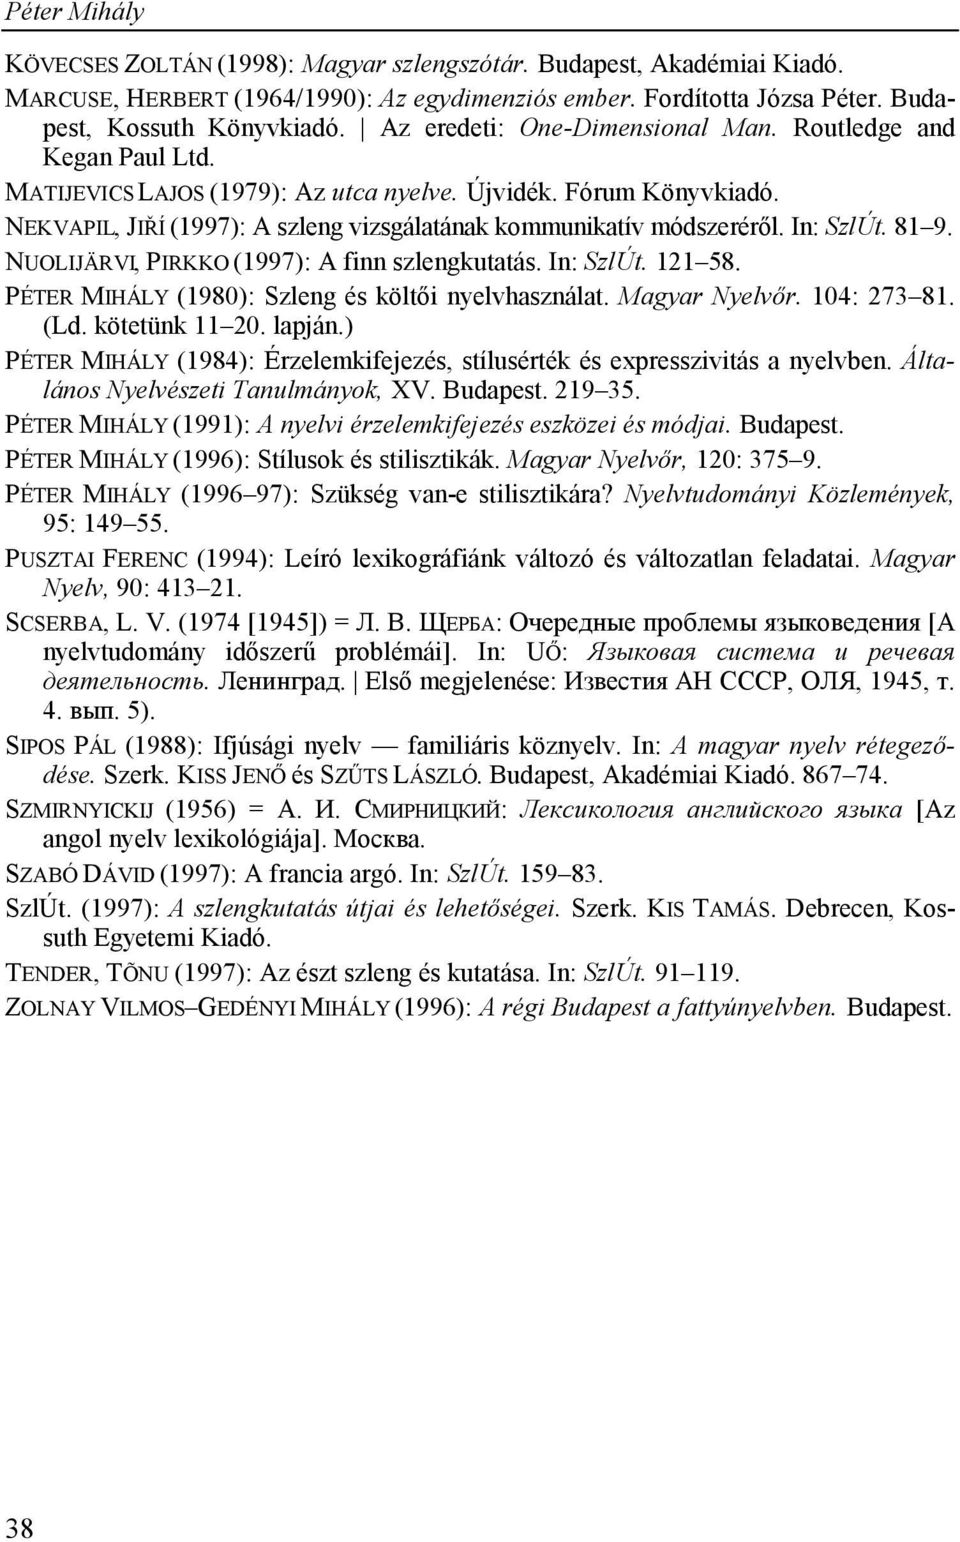 NEKVAPIL, JIŘÍ (1997): A szleng vizsgálatának kommunikatív módszeréről. In: SzlÚt. 81 9. NUOLIJÄRVI, PIRKKO (1997): A finn szlengkutatás. In: SzlÚt. 121 58.